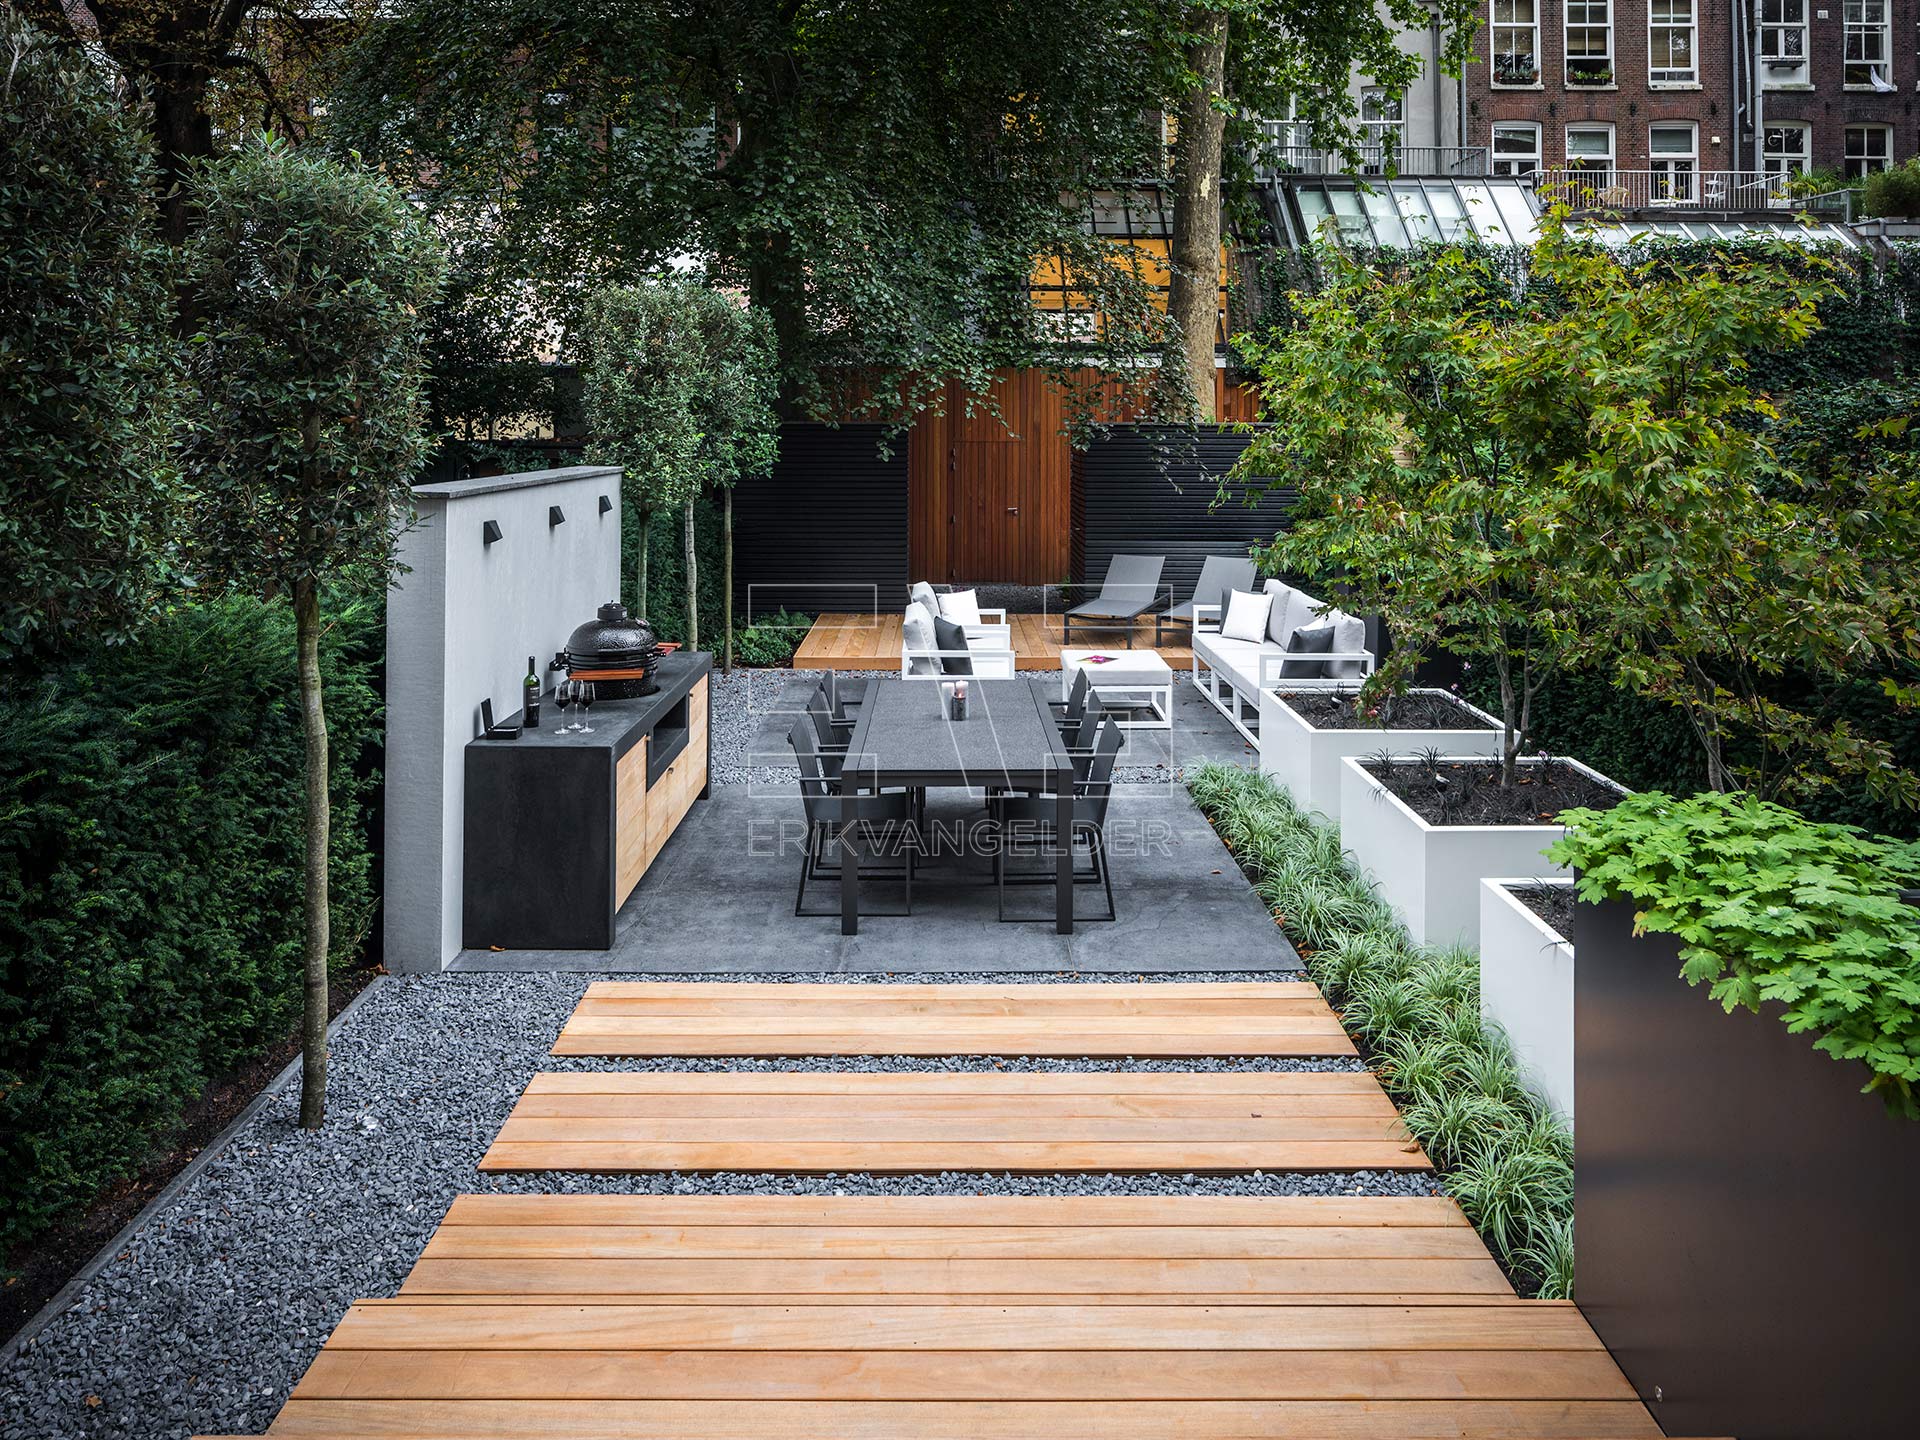 Moderne-luxe-stijlvol-tuinontwerp-beton-hout-witte-plantenbakken-design-meubels-buitenkeuken-erikvangelder-tuinarchitect-tuindesign